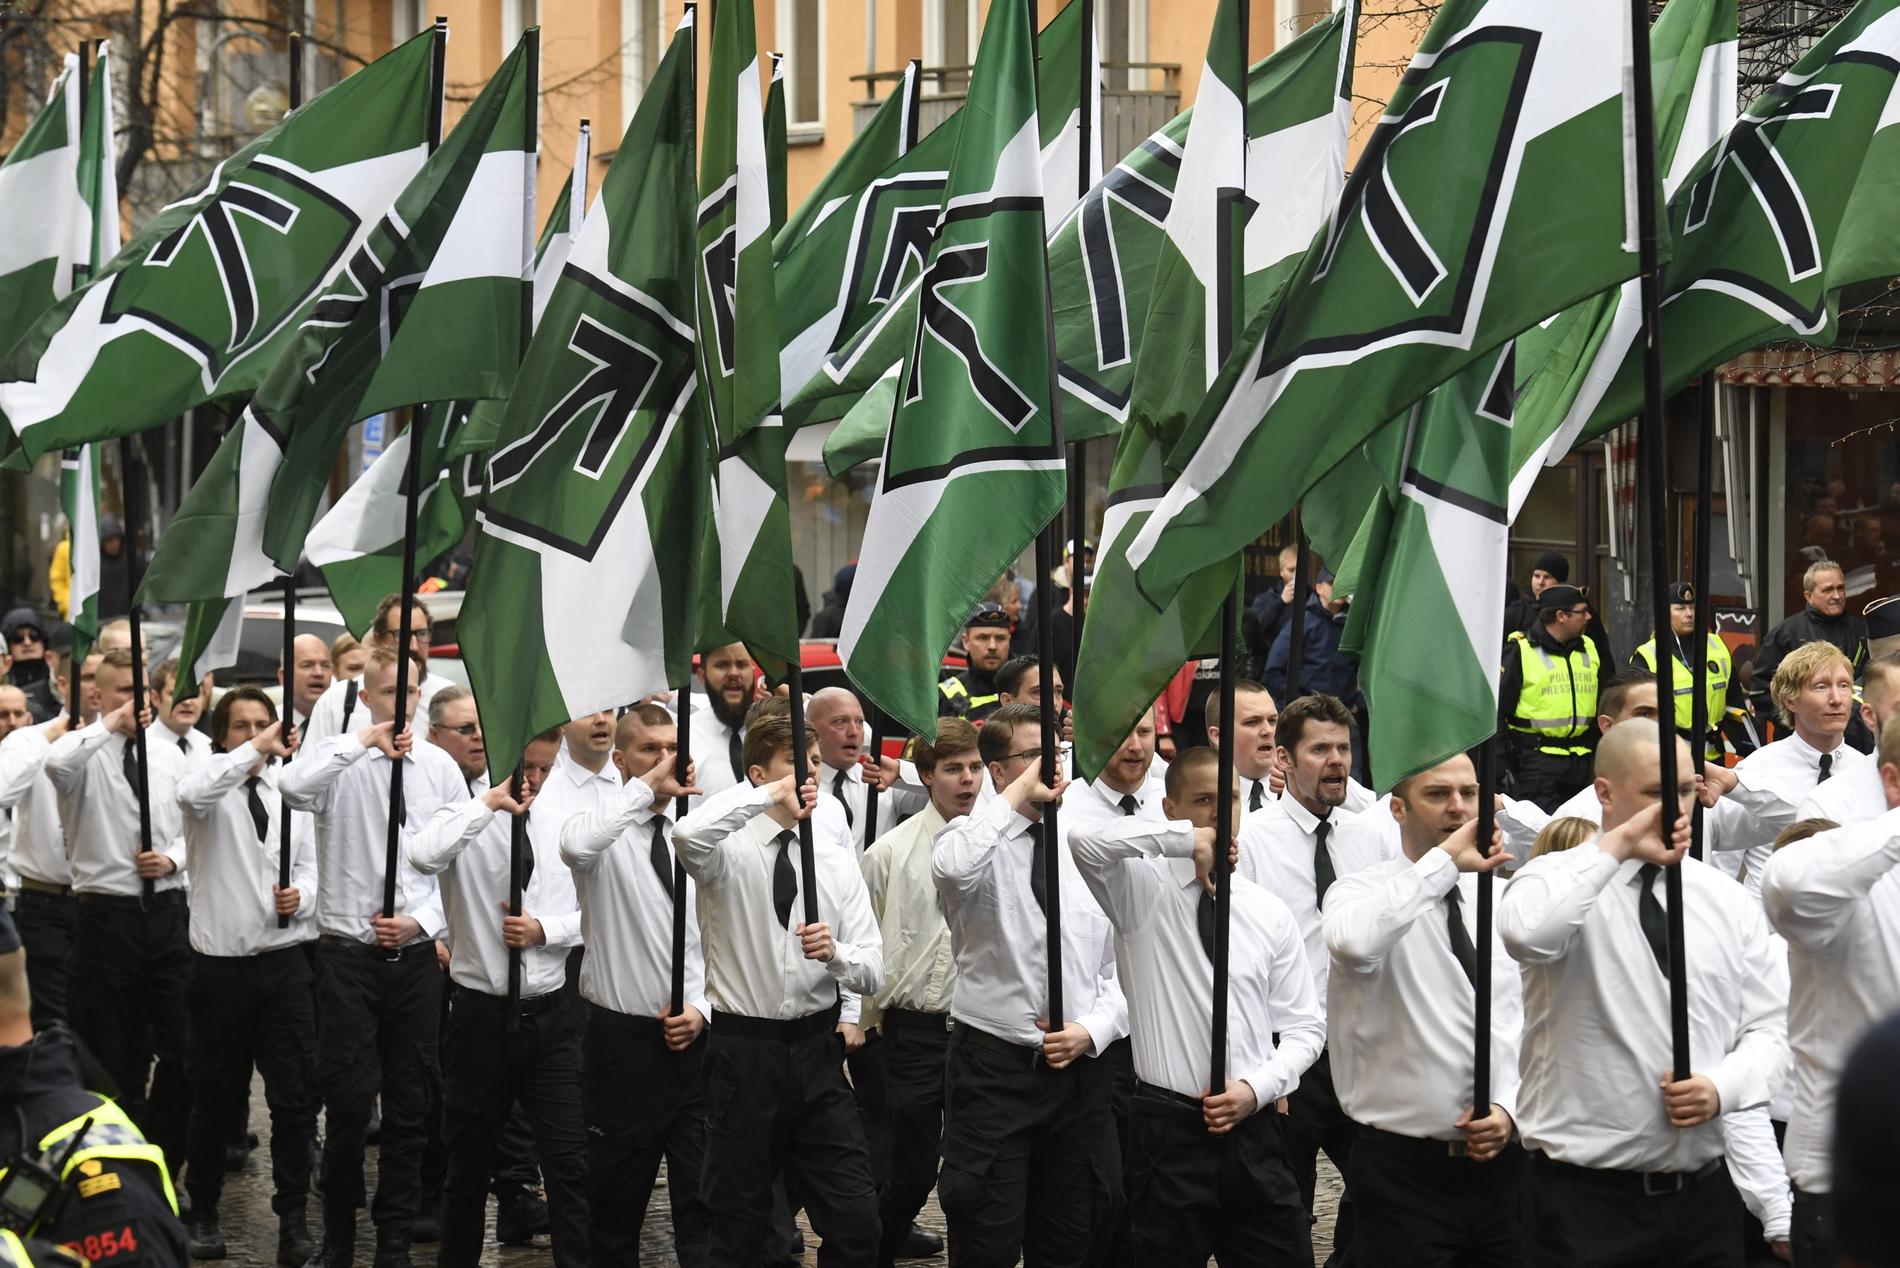 Nordiska motståndsrörelsen (NMR) demonstrerar i Ludvika på 1 maj. Arkivbild.